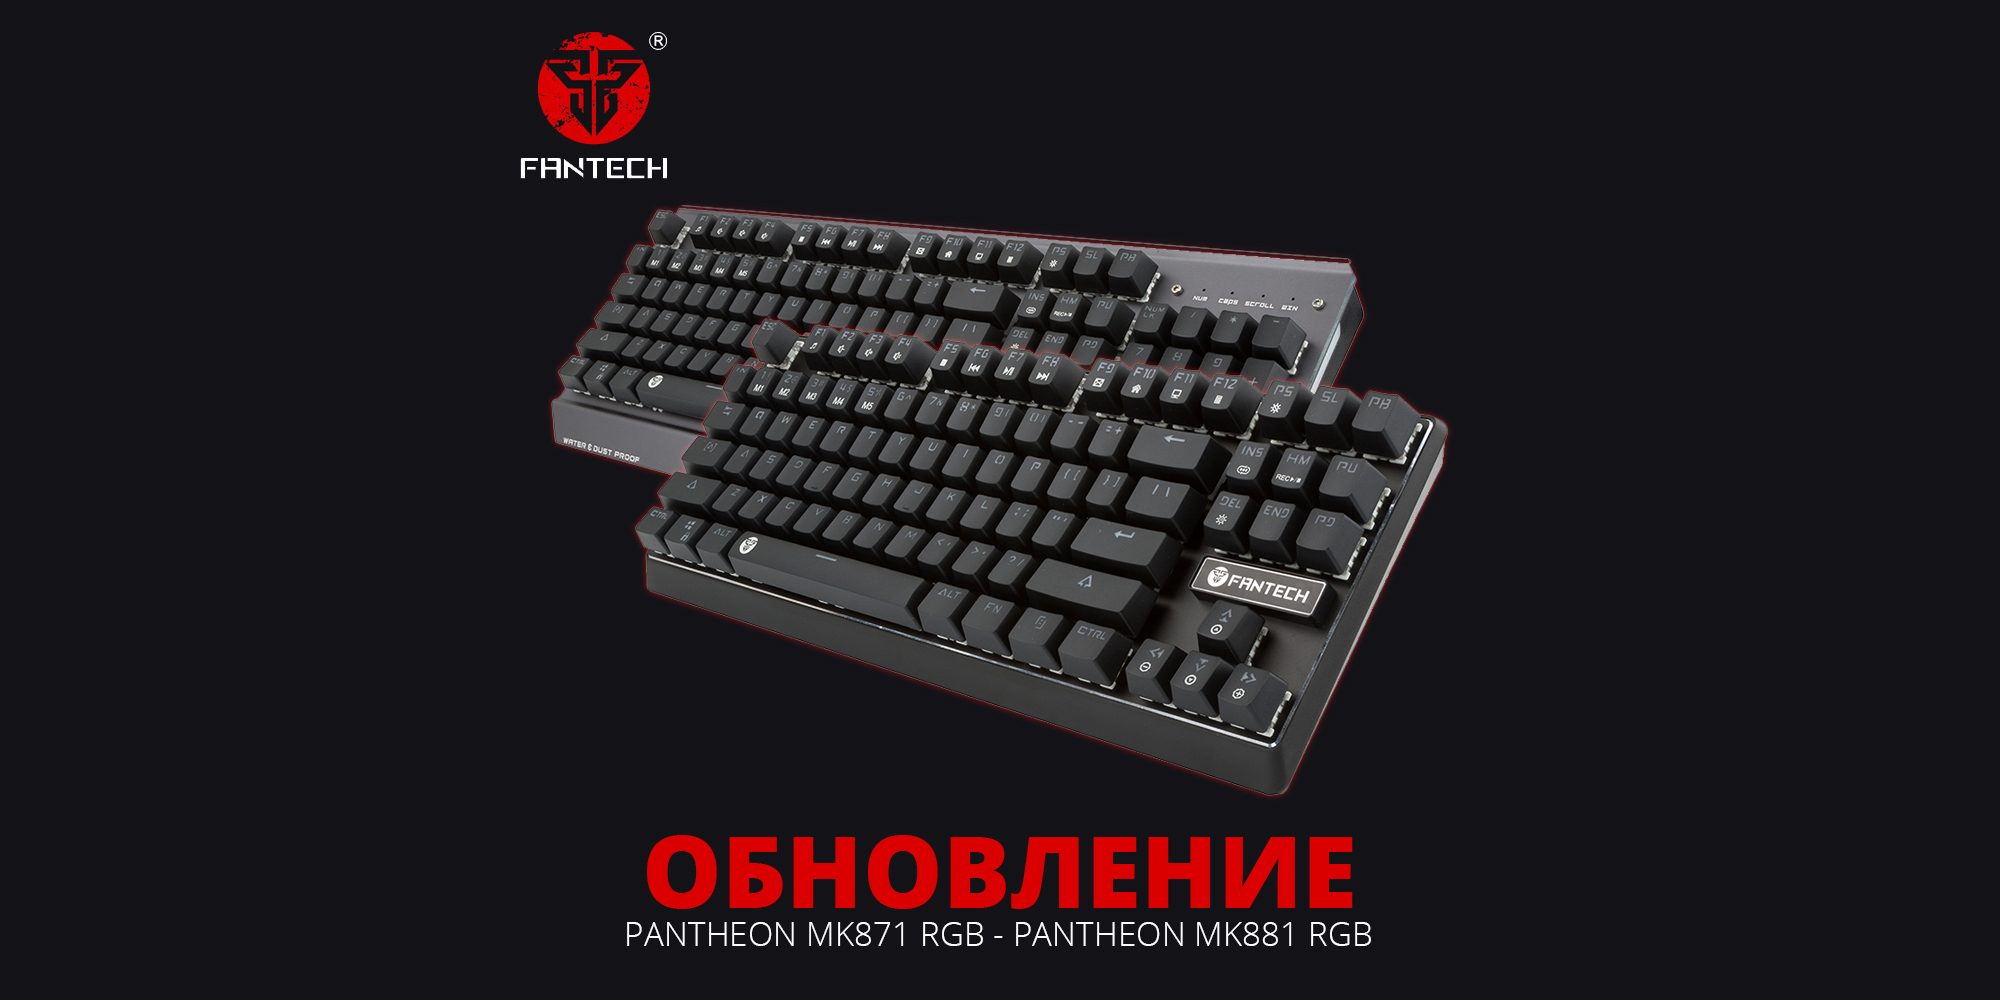 Обновление игровых клавиатур Fantech Pantheon MK871 и MK881